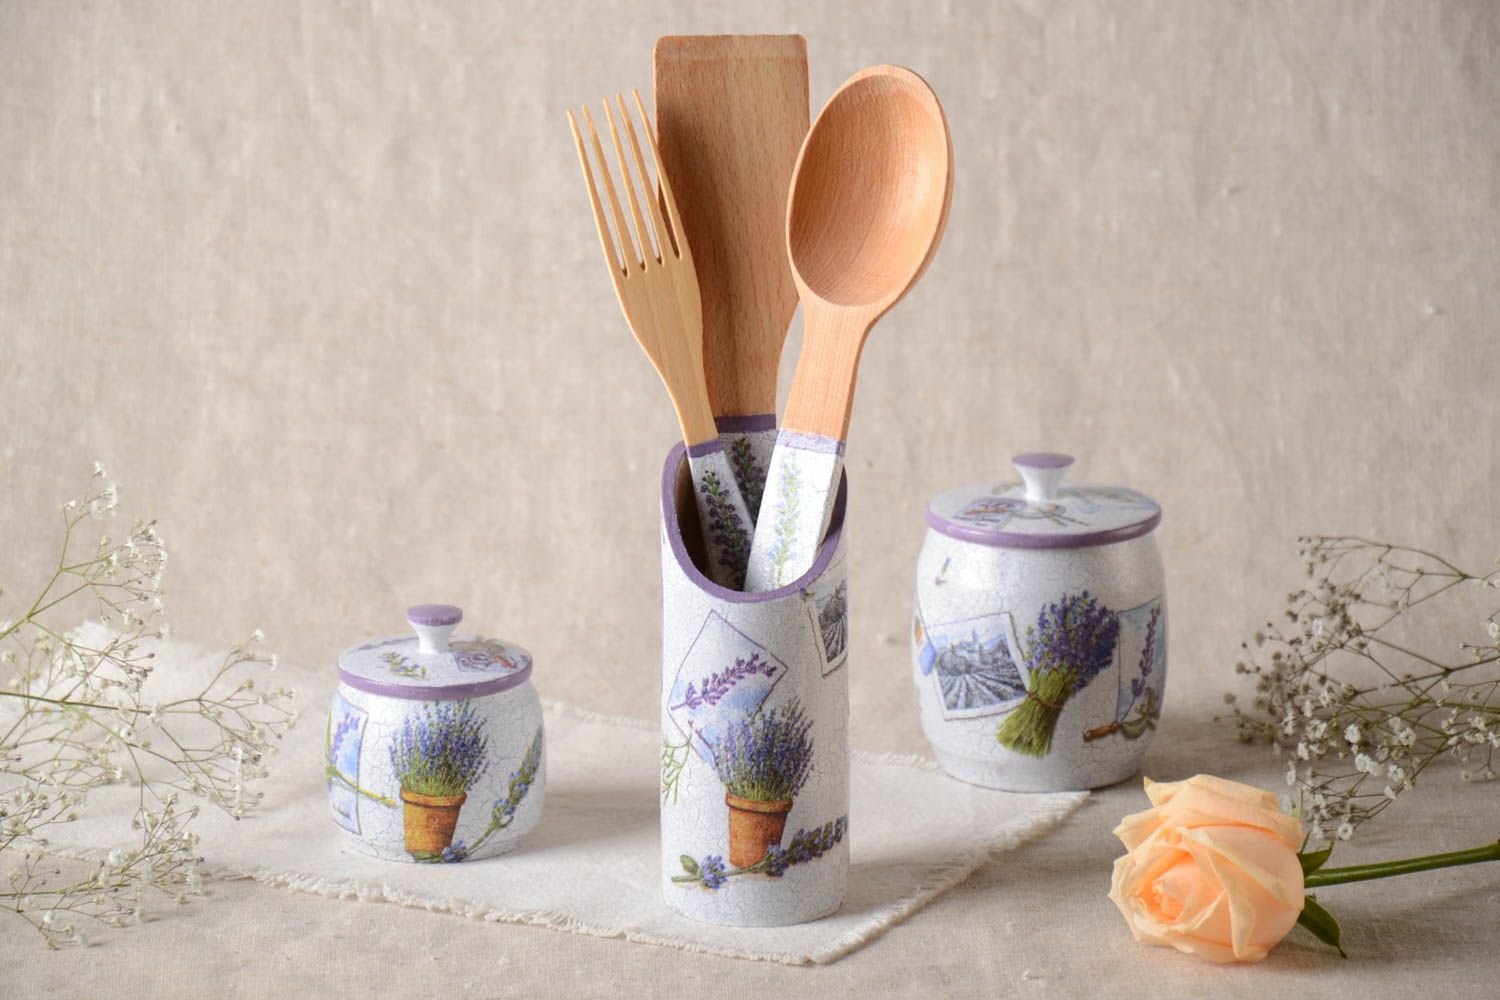 Set of kitchen accessories wooden stylish kitchenware handmade wooden utensils photo 1